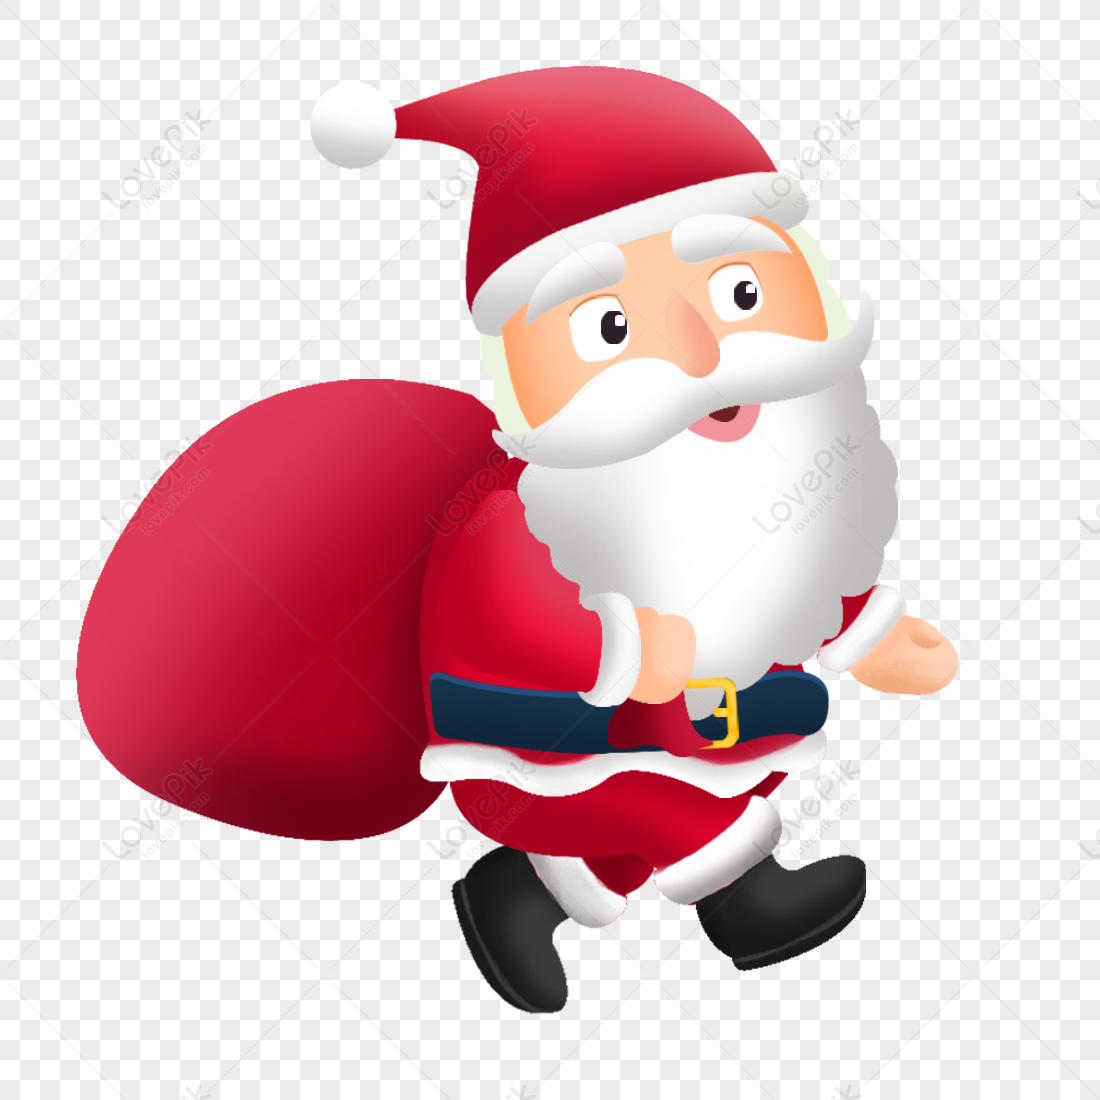 Ông Già Noel: Ông Già Noel là một biểu tượng của giáng sinh được yêu thích trên khắp thế giới. Hãy đến với hình ảnh để cùng nhìn thấy hình ảnh giàu cảm xúc và sự ngọt ngào của ông già Noel đang mang đến cho những đứa trẻ gìn giữ giấc mơ.